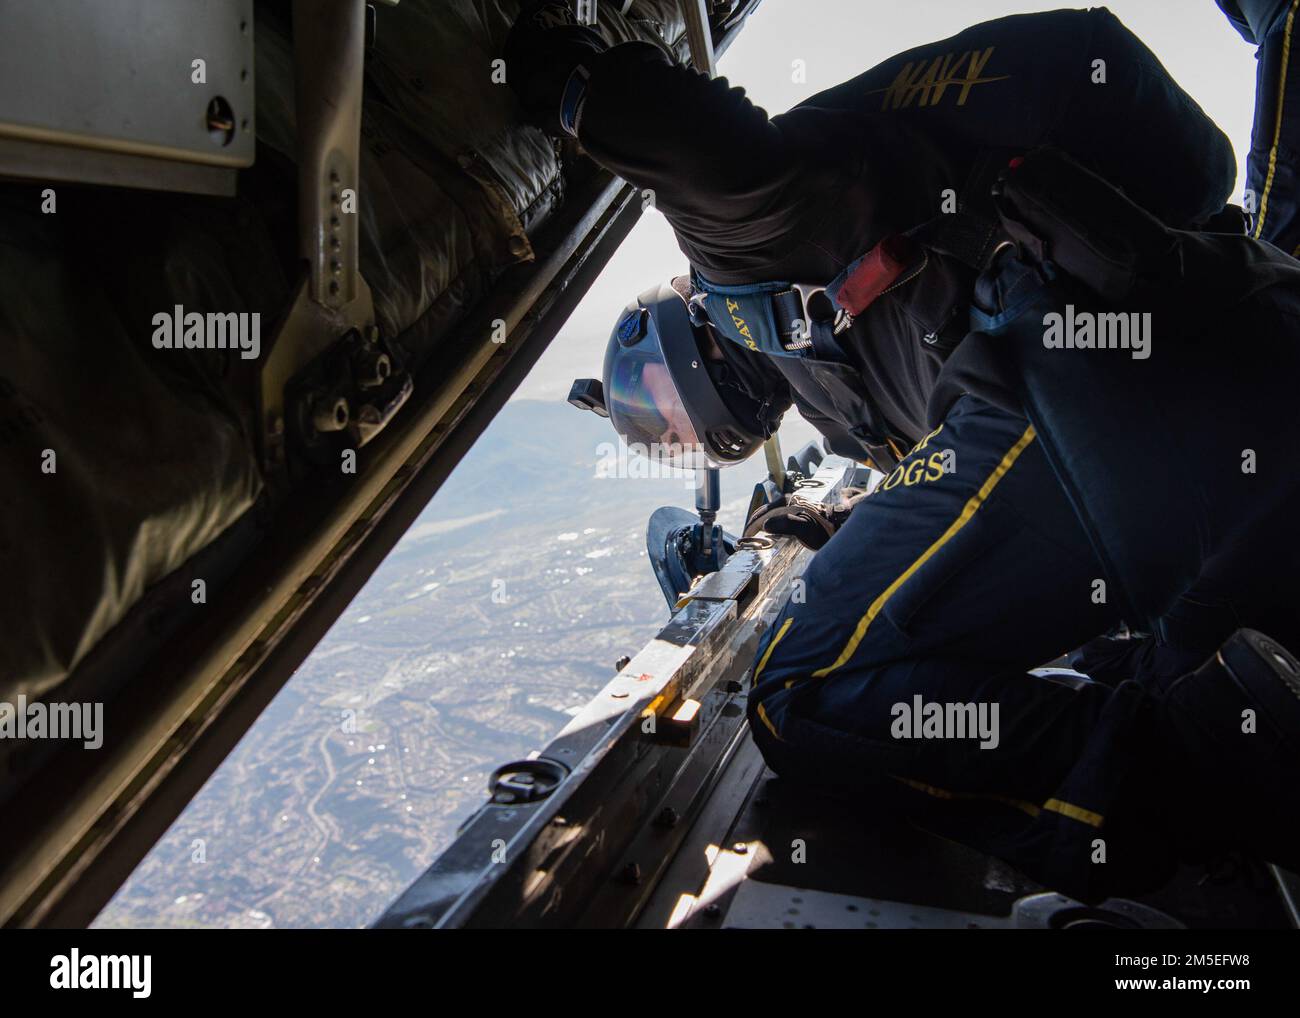 CORONADO, Californie (7 mars 2022) Membre des États-Unis L'équipe de parachutistes de la Marine, les grenouilles de Leap, se prépare à sortir de Fat Albert, un avion Hercules C-130 affecté aux États-Unis Escadron de démonstration de vol de la Marine, The Blue Angels, 7 mars 2022, à la base aérienne navale de North Island, Coronado, en Californie, au cours d'un exercice conjoint. L'équipe de parachutistes de la Marine est basée à San Diego et effectue des démonstrations de parachutistes aériennes autour de la nation pour soutenir la guerre spéciale navale et le recrutement de la Marine. La guerre navale spéciale est la première force maritime d’opérations spéciales du pays, en position unique pour étendre le Banque D'Images